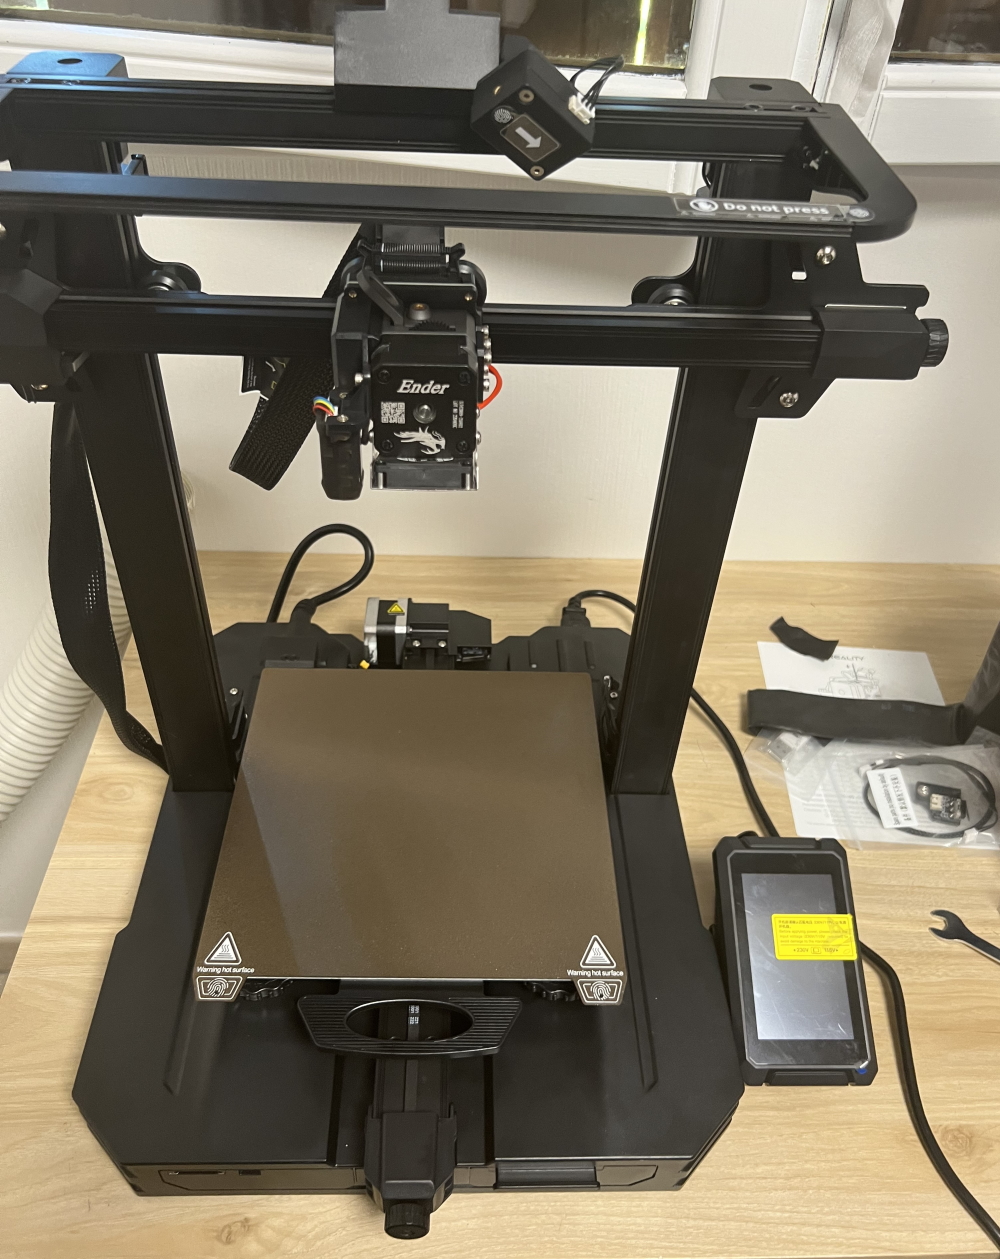 CREALITY 3D – plaque magnétique Flexible pour imprimante 3D, Base  chauffante FDM Ender-3 CR-20